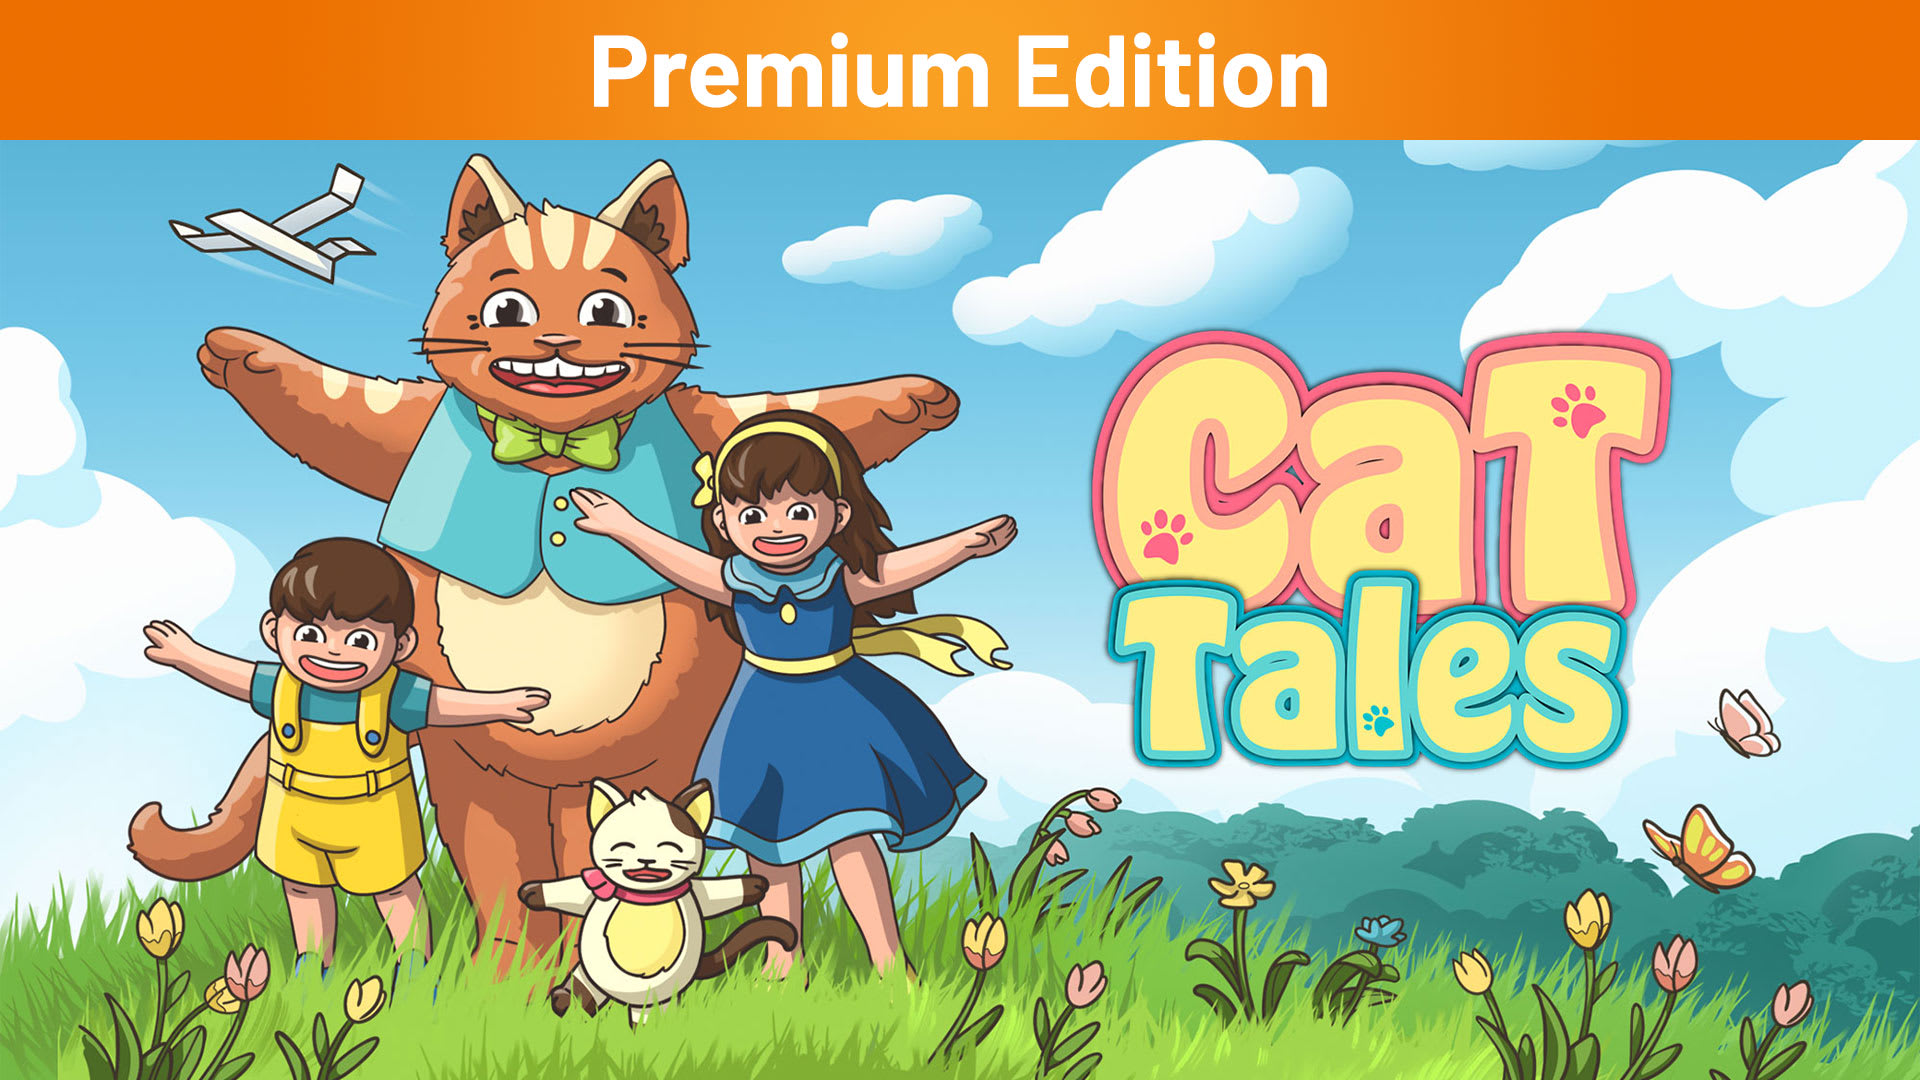 Cat Tales Premium Edition